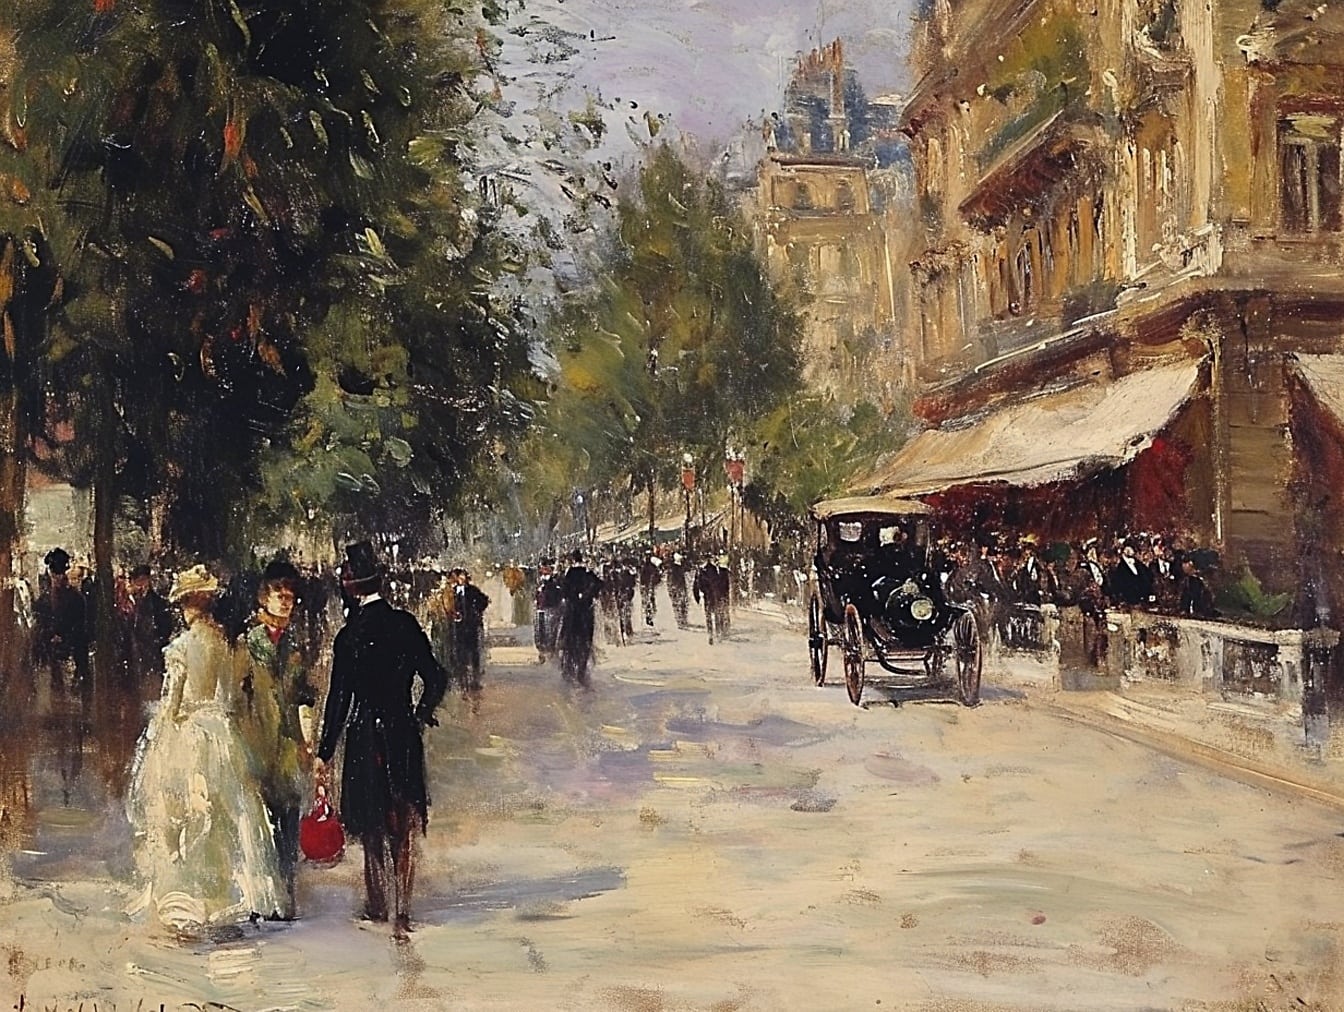 Pintura a óleo de pessoas caminhando em uma rua no centro da cidade retratando o estilo de vida do século 19